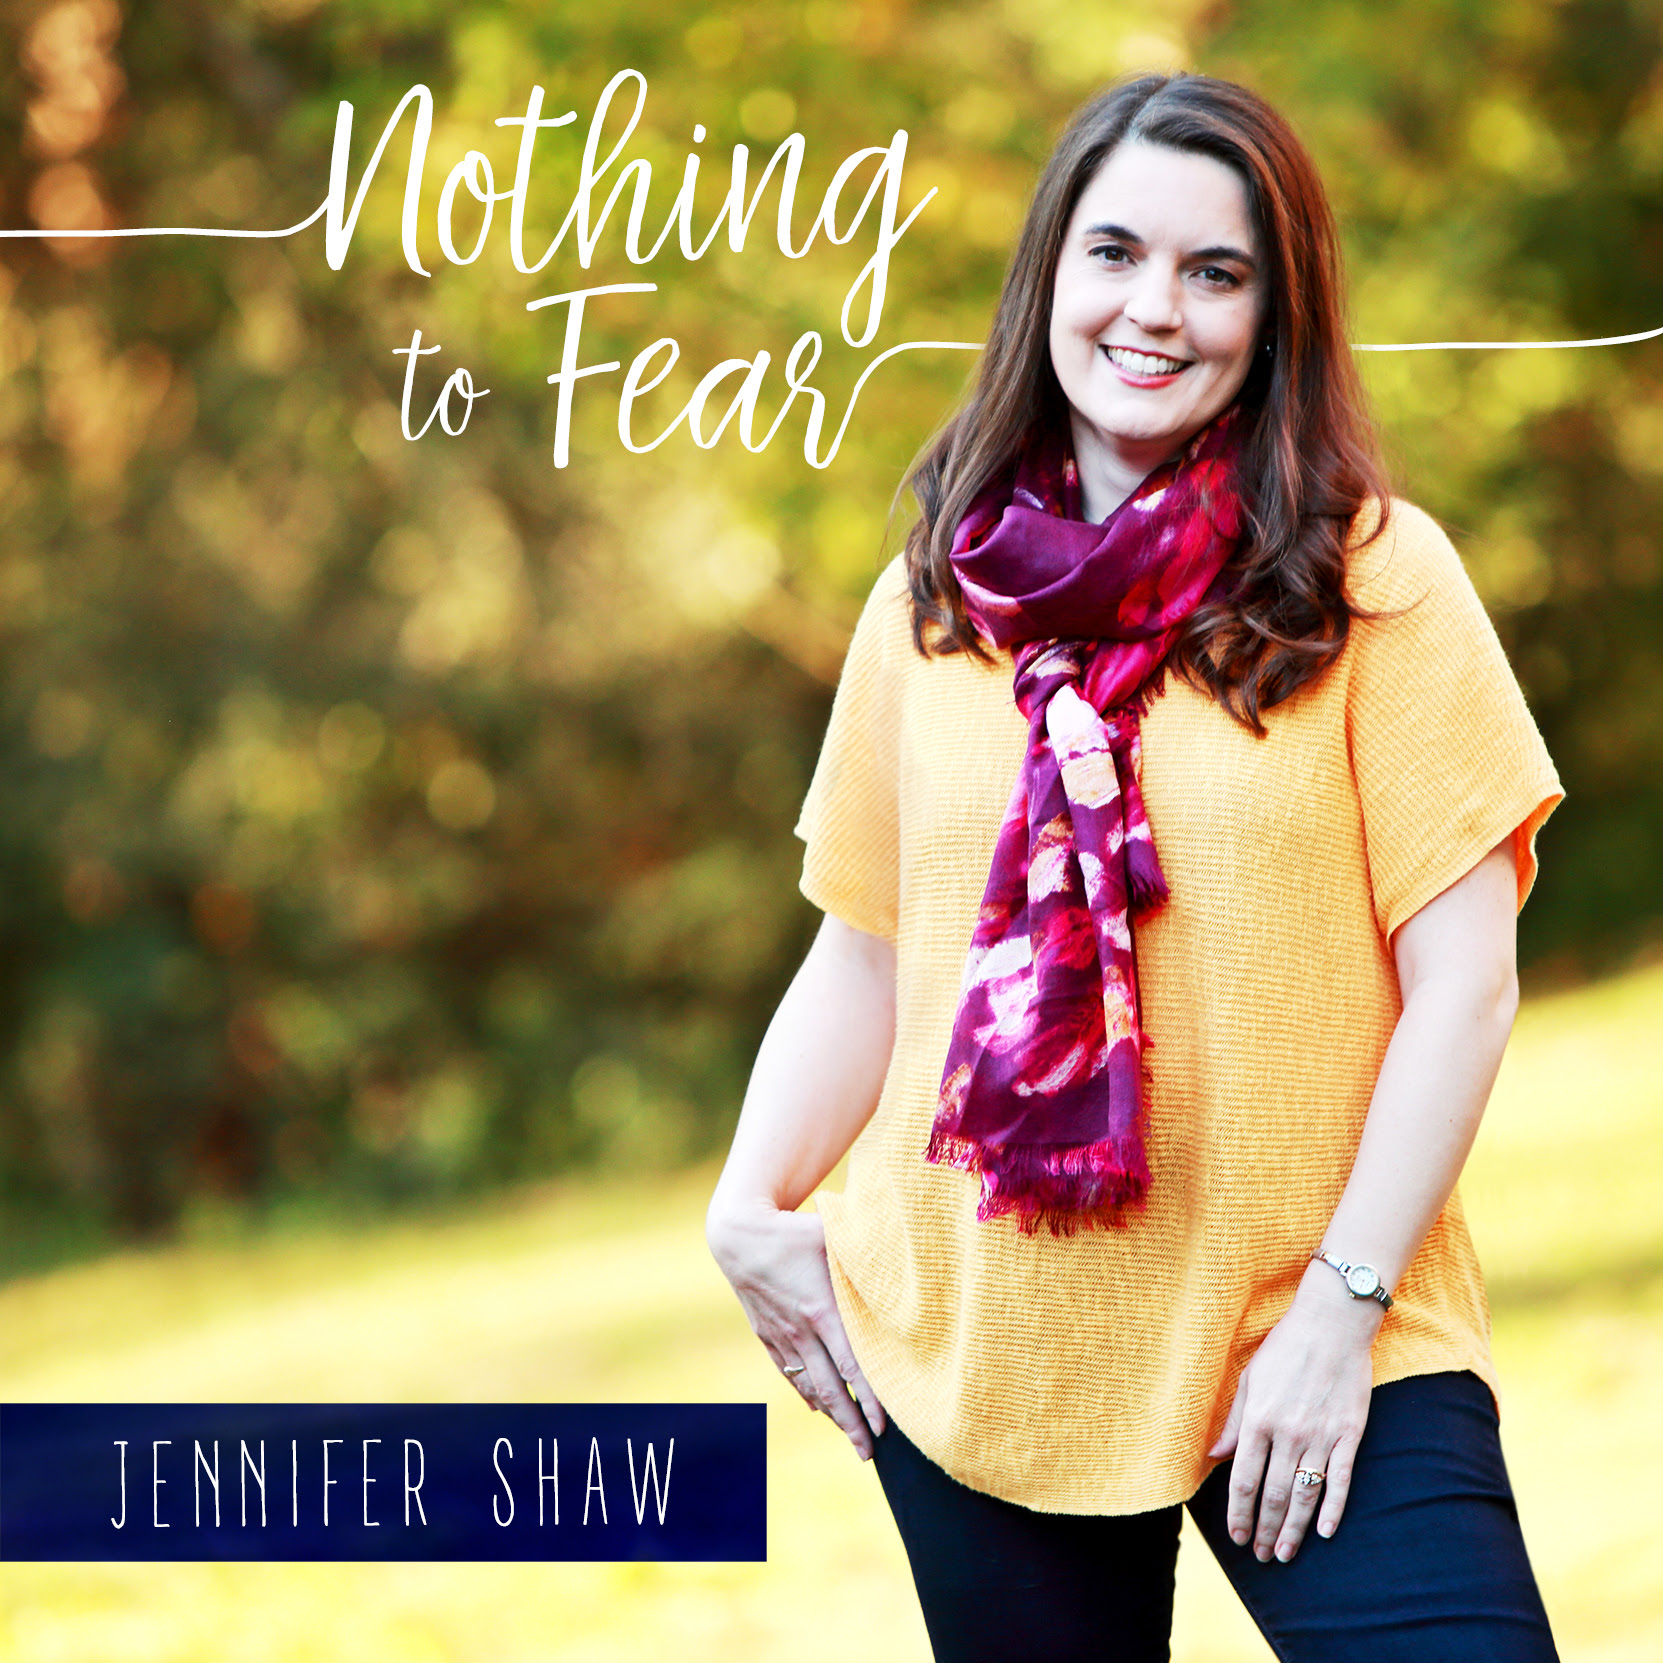 Jennifer Shaw Ministries